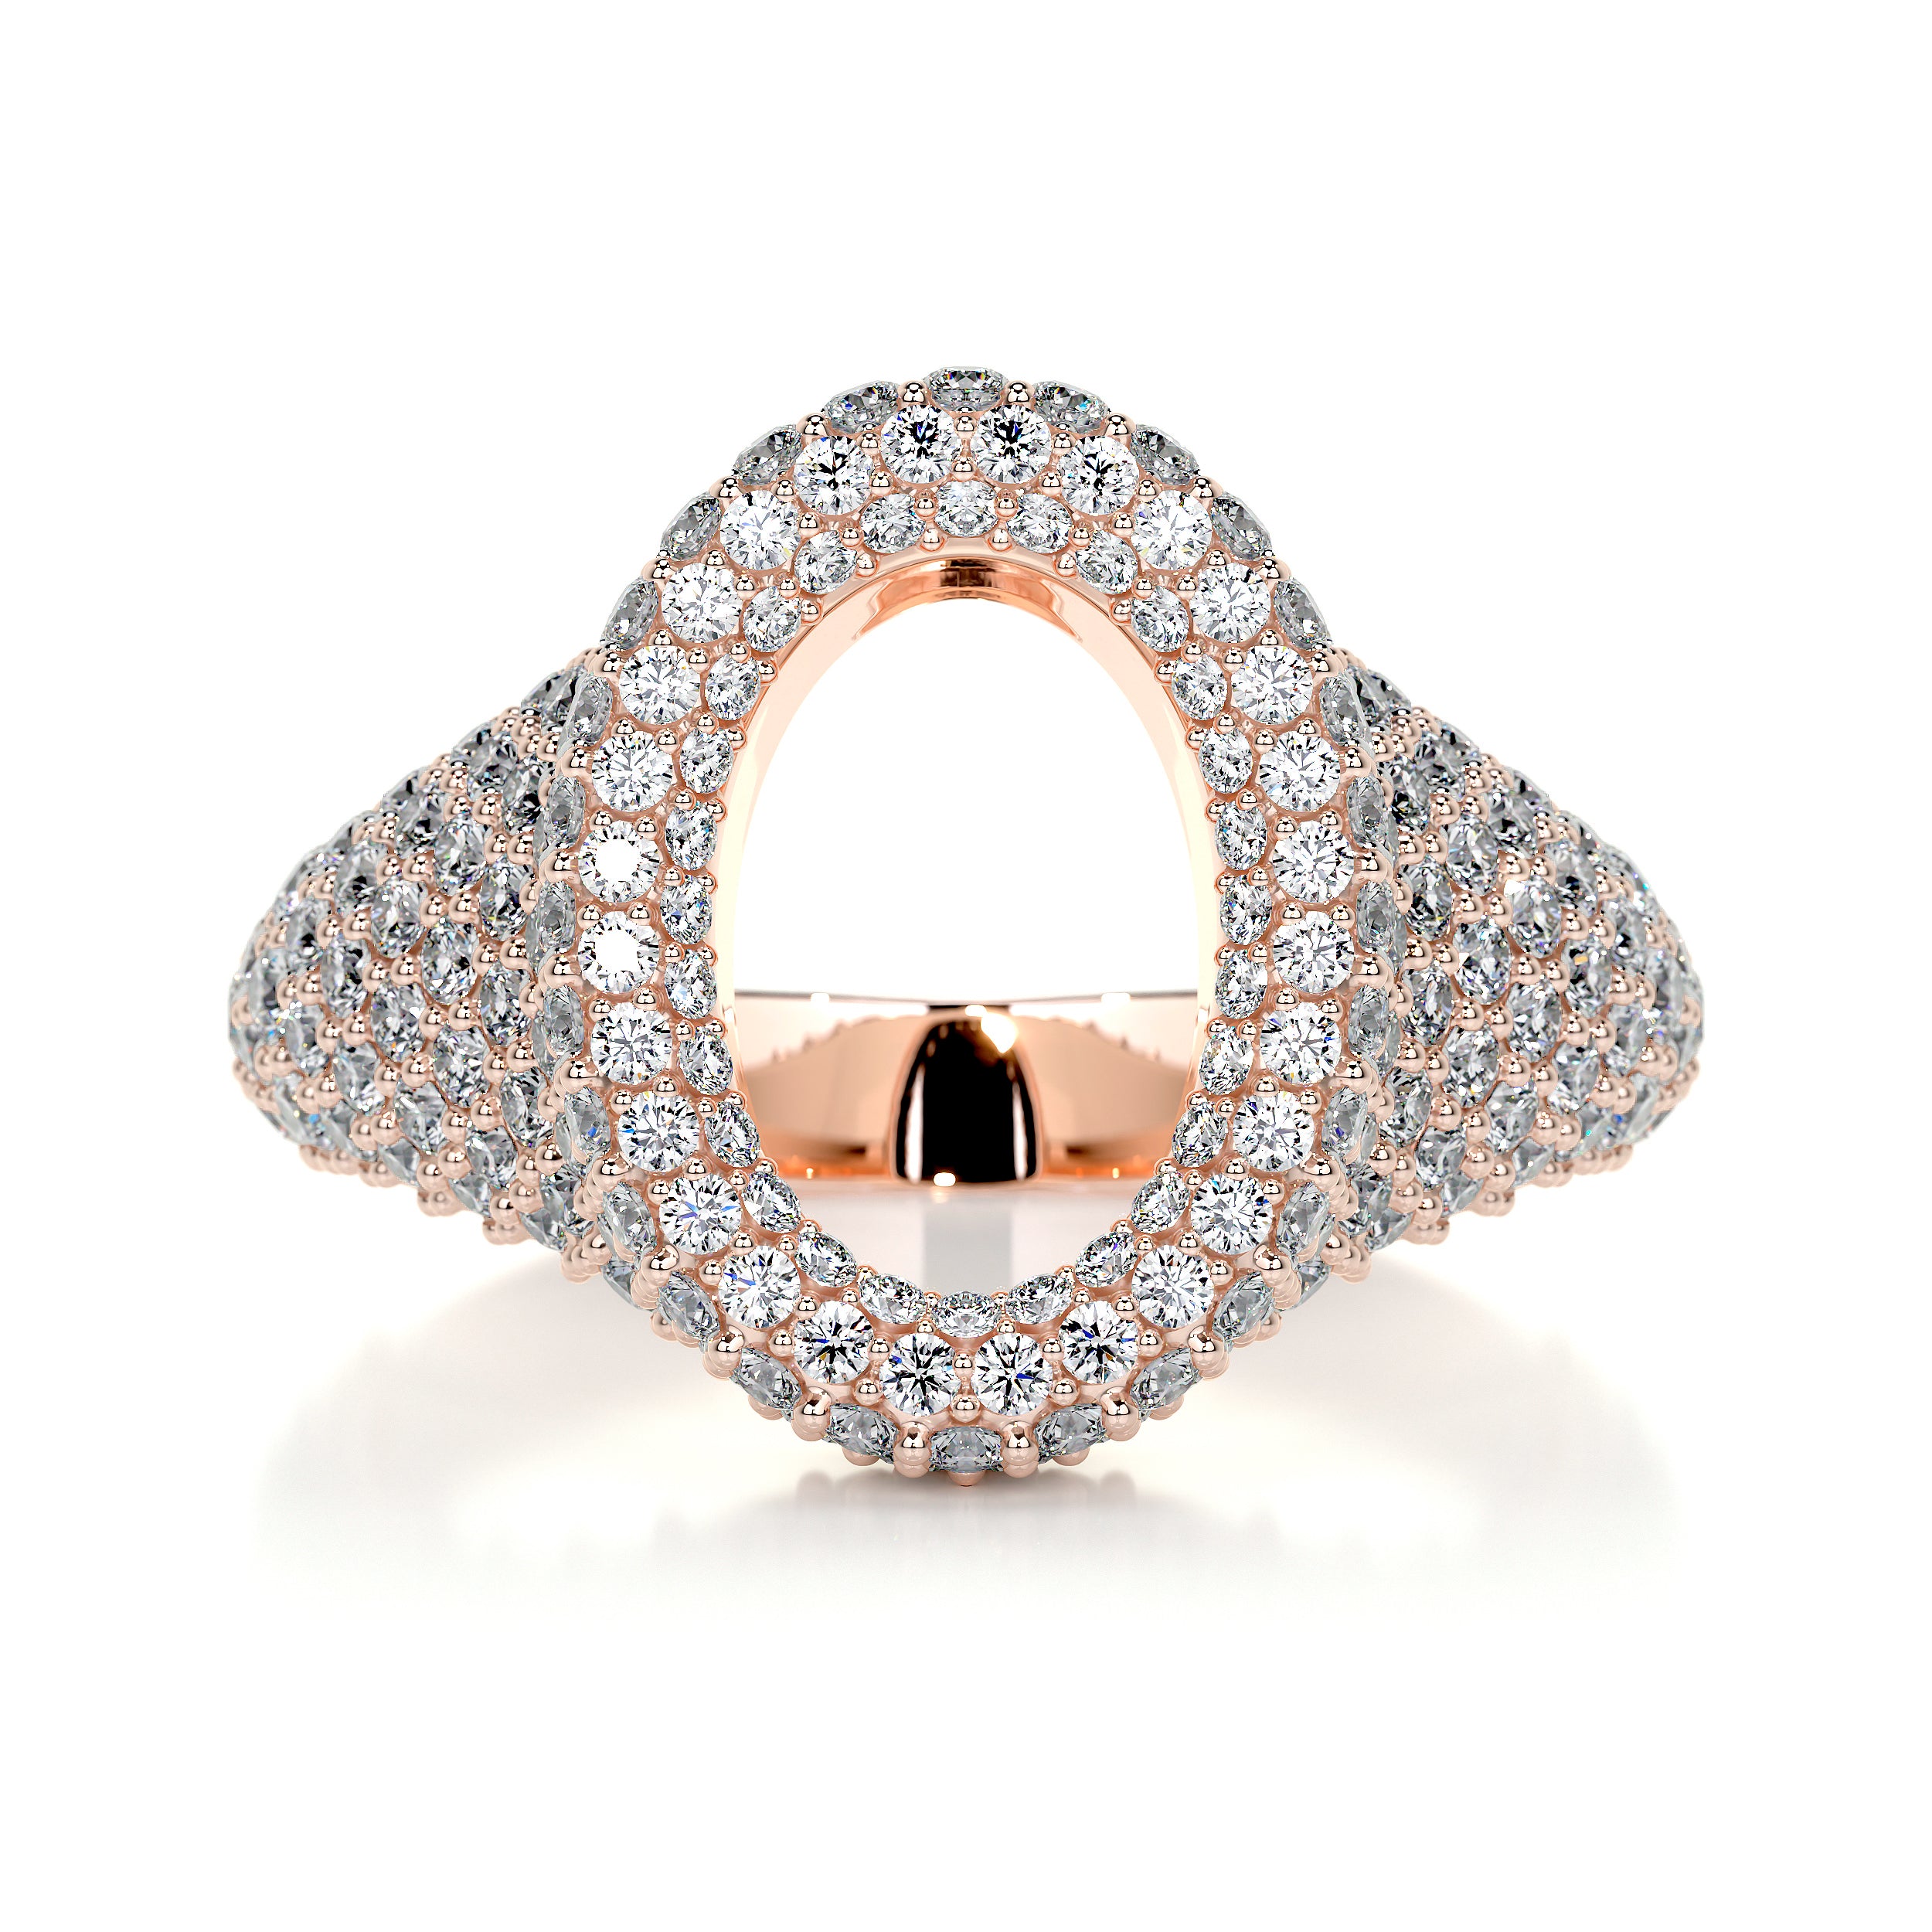 Angelina Wedding Ring   (1.4 Carat) -14K Rose Gold